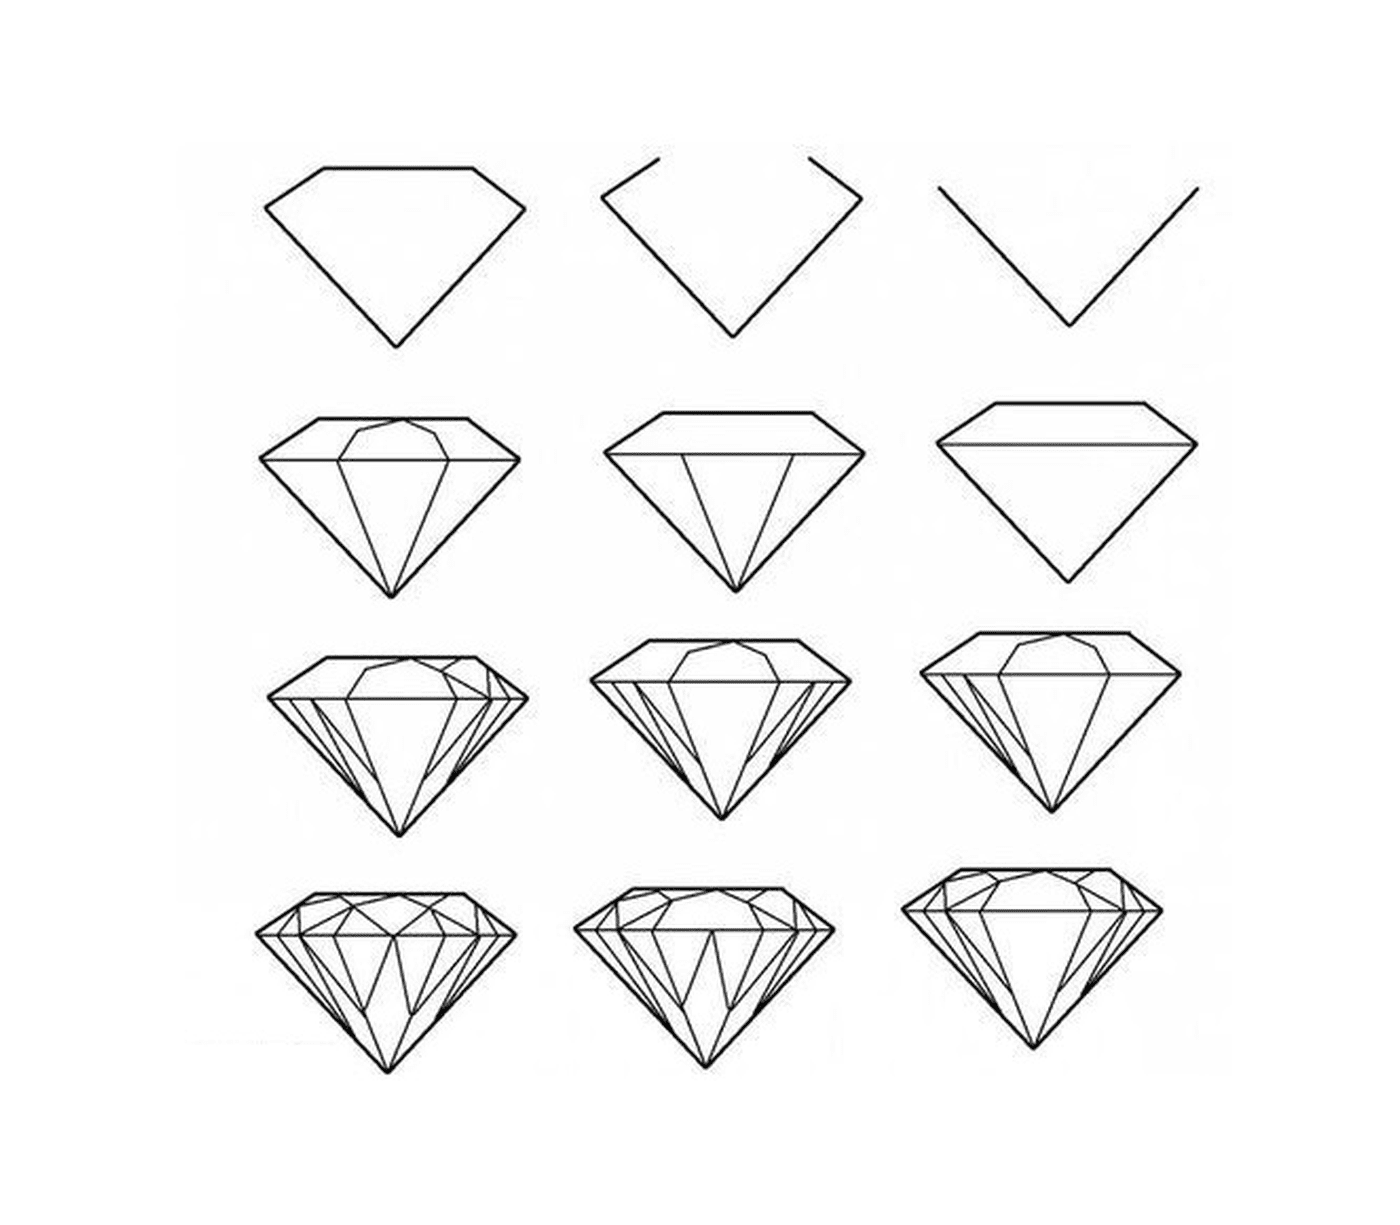  一系列钻石图画 